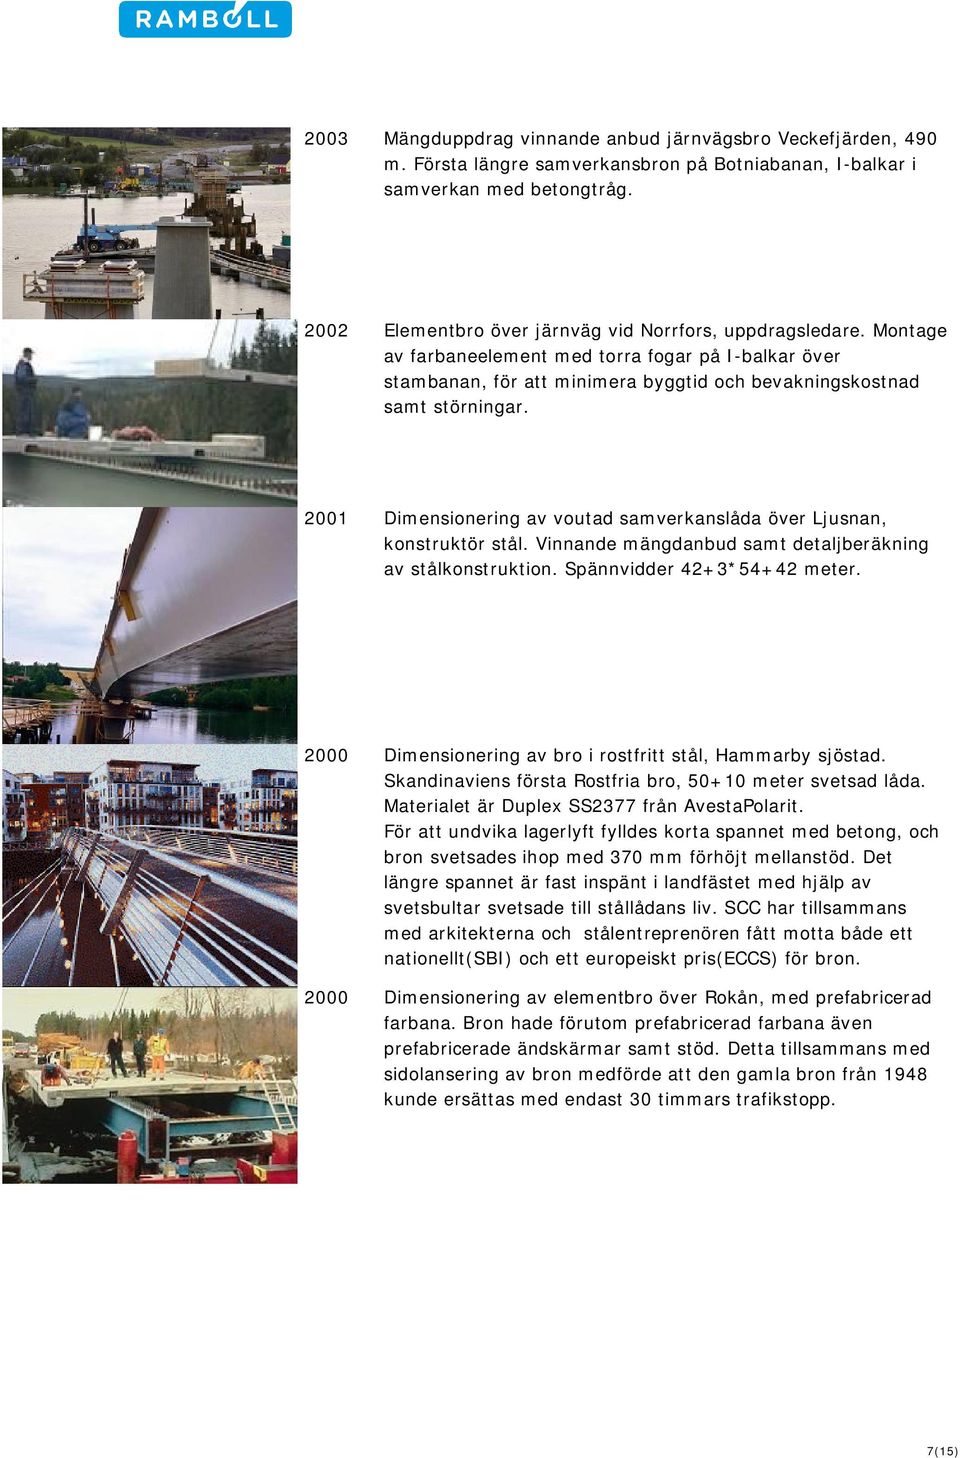 2001 Dimensionering av voutad samverkanslåda över Ljusnan, konstruktör stål. Vinnande mängdanbud samt detaljberäkning av stålkonstruktion. Spännvidder 42+3*54+42 meter.